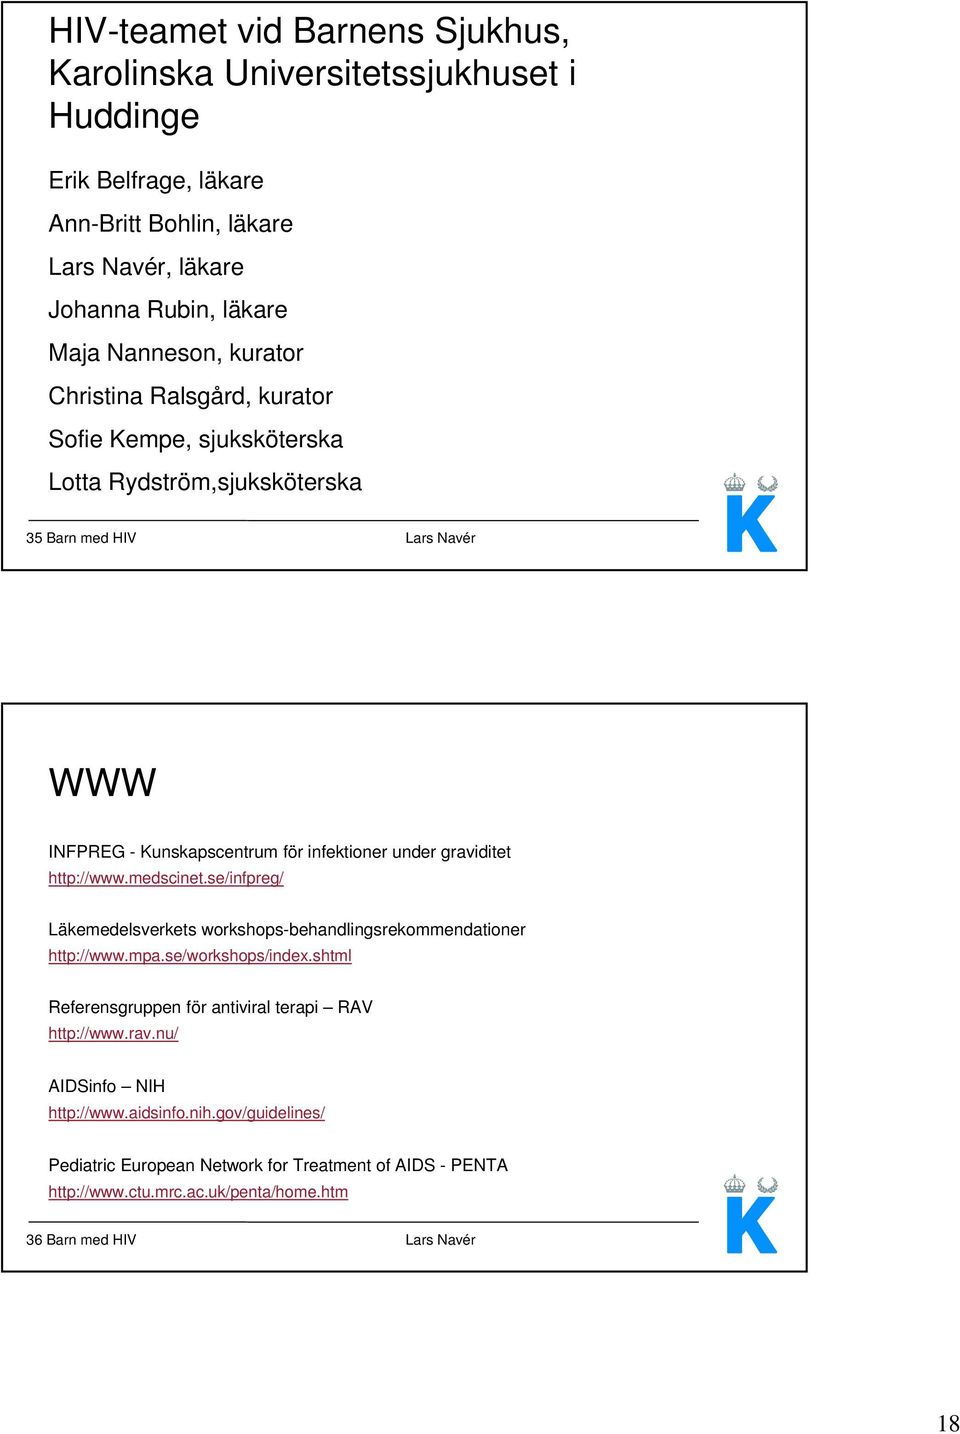 http://www.medscinet.se/infpreg/ Läkemedelsverkets workshops-behandlingsrekommendationer http://www.mpa.se/workshops/index.shtml Referensgruppen för antiviral terapi RAV http://www.